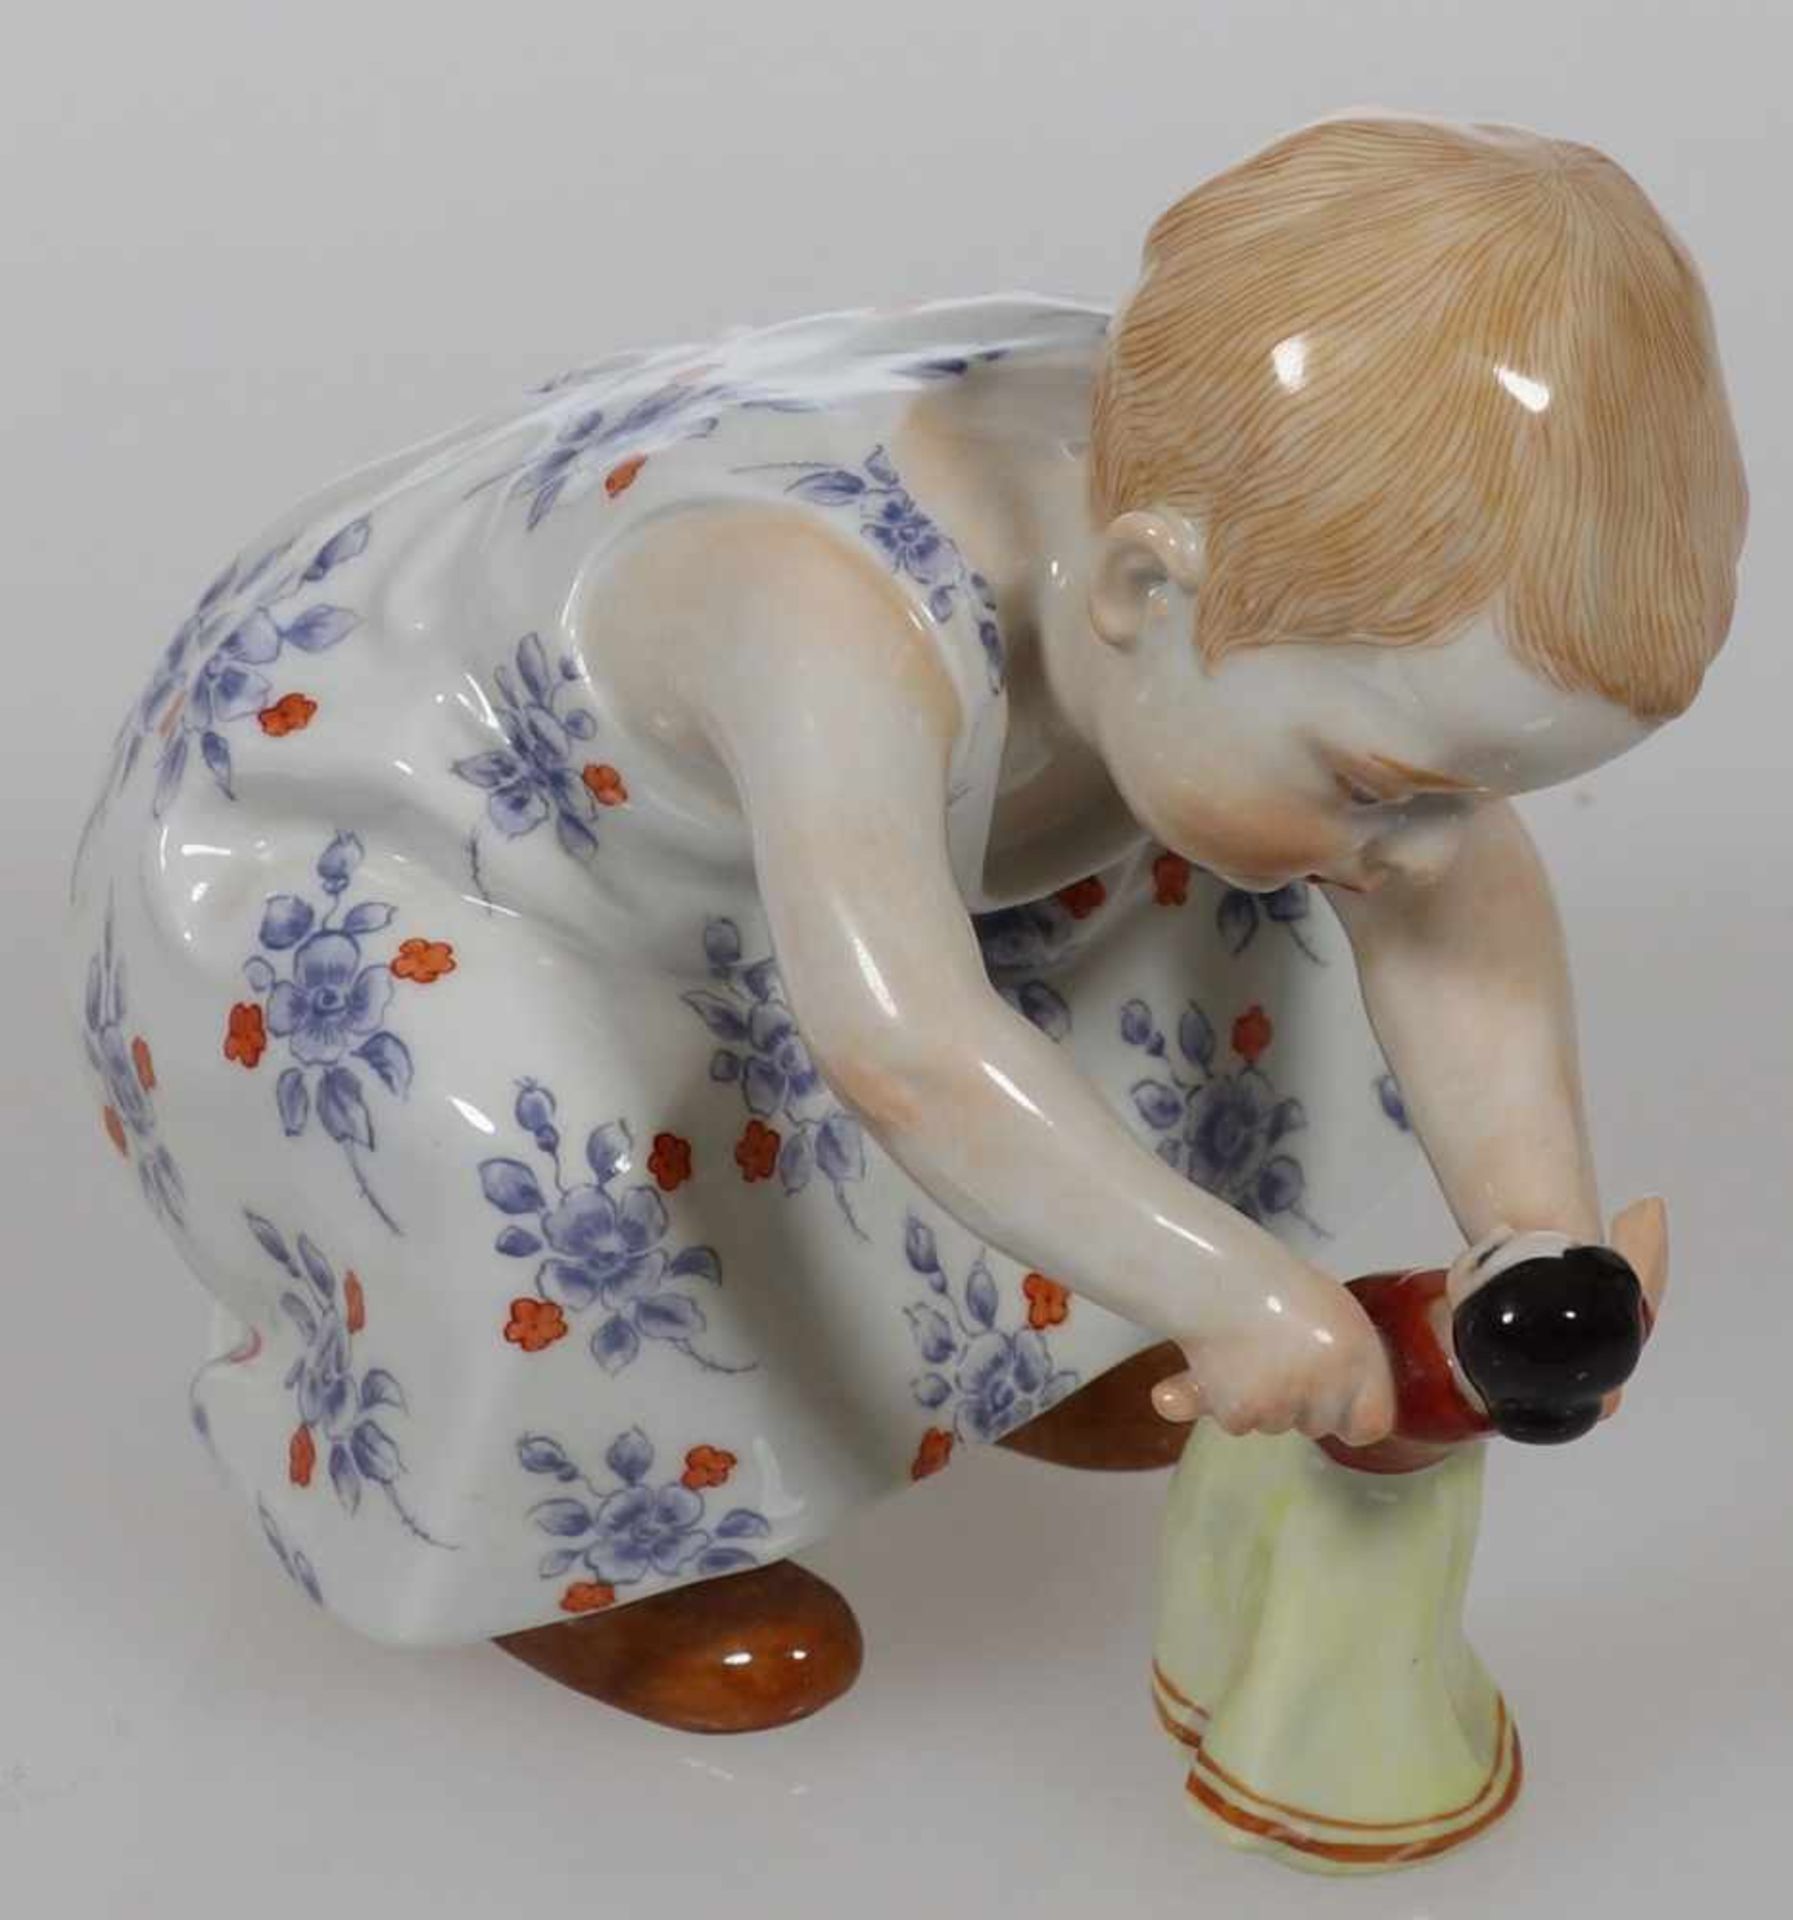 Kind mit Puppe, tanzendStaatliche Porzellan Manufaktur, Meissen 1992. Porzellan, weiß, glasiert.